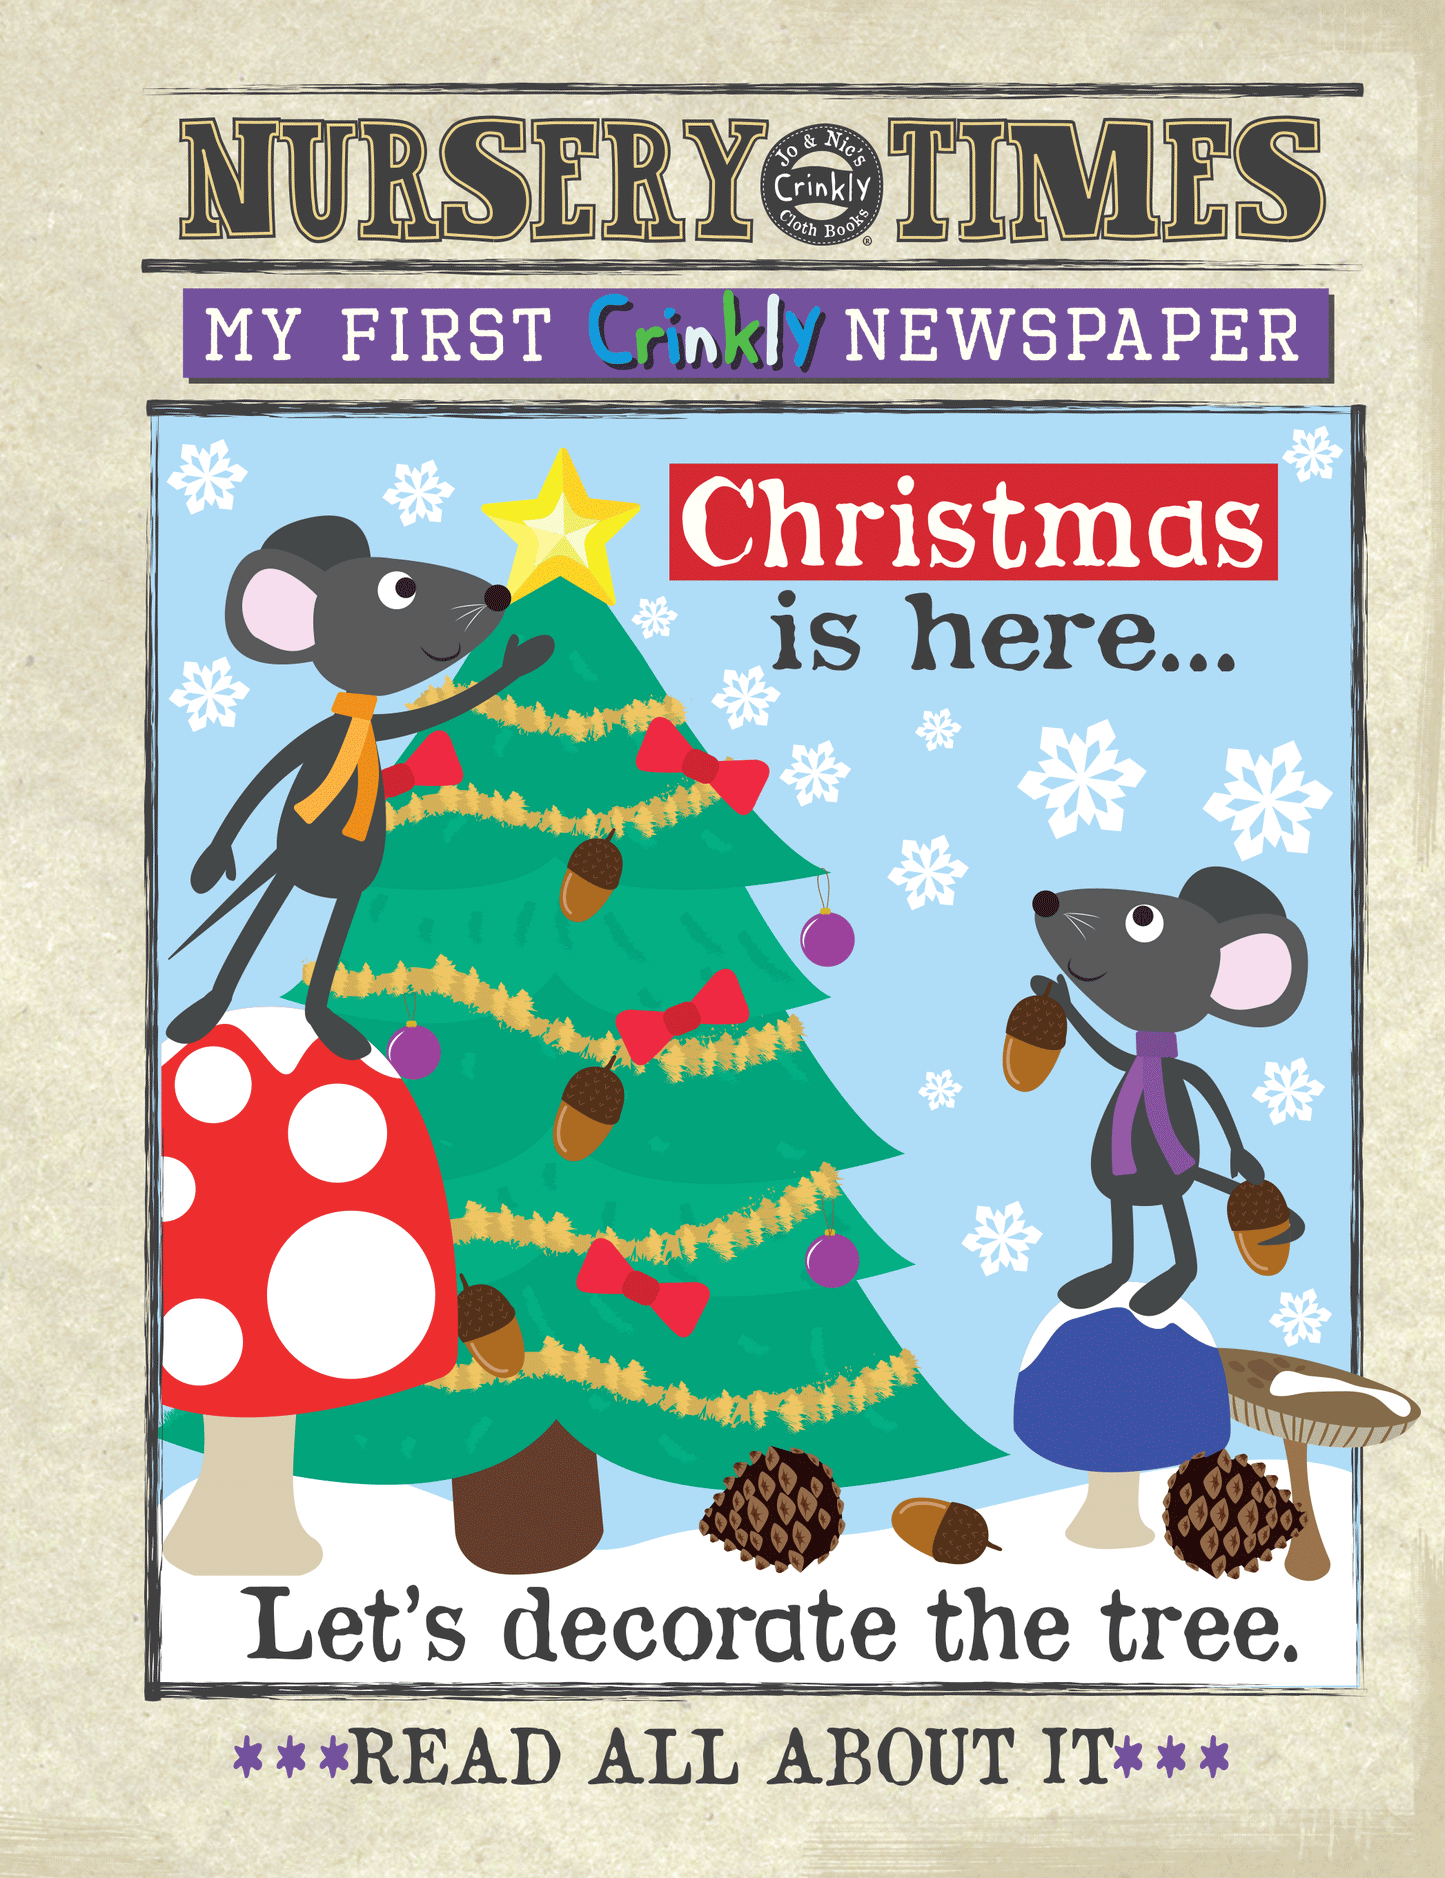 Nursery Times Crinkly Newspaper - Christmas is here